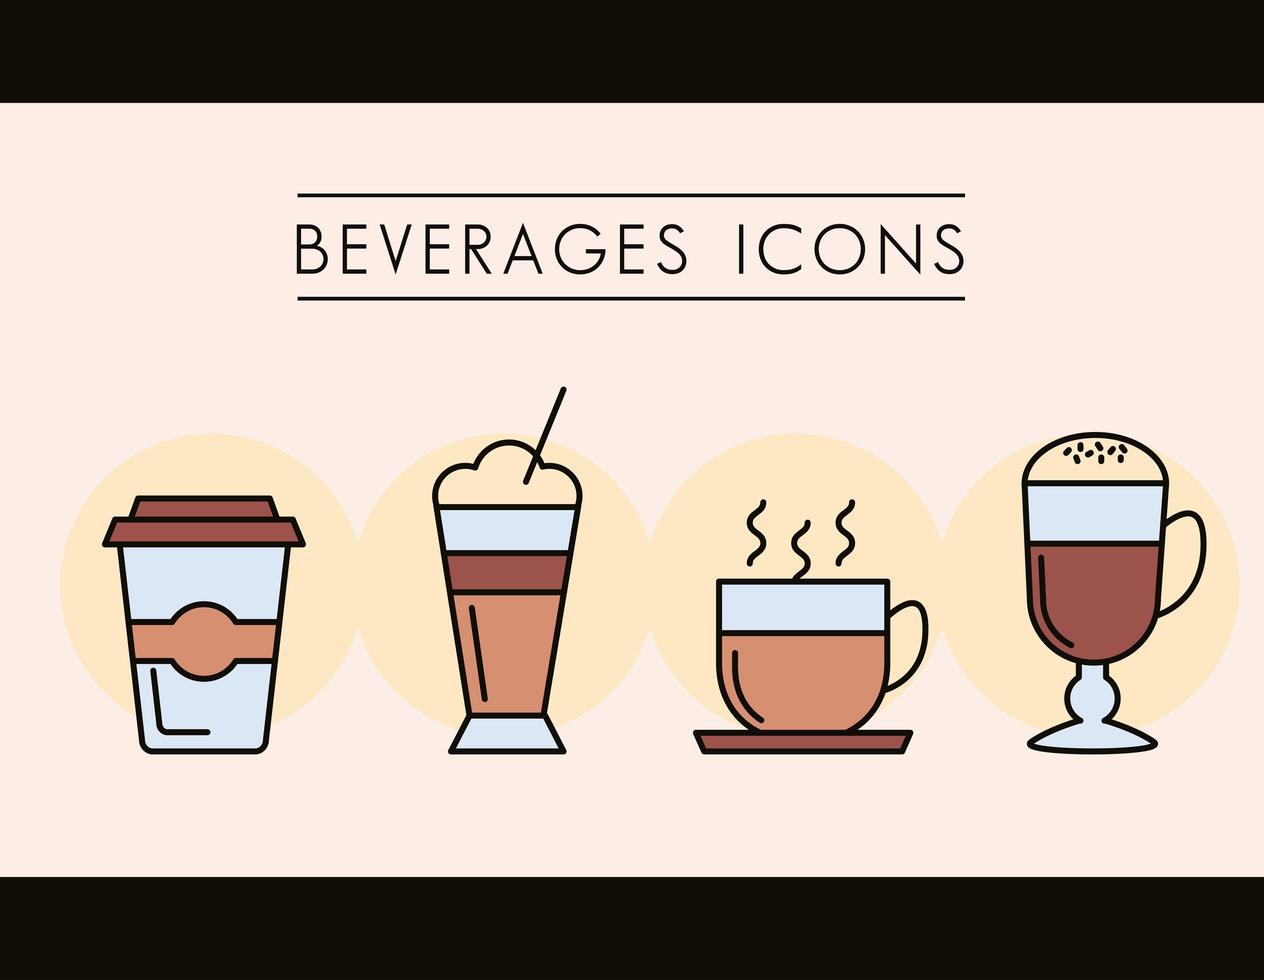 ensemble d & # 39; icônes de boissons au café vecteur